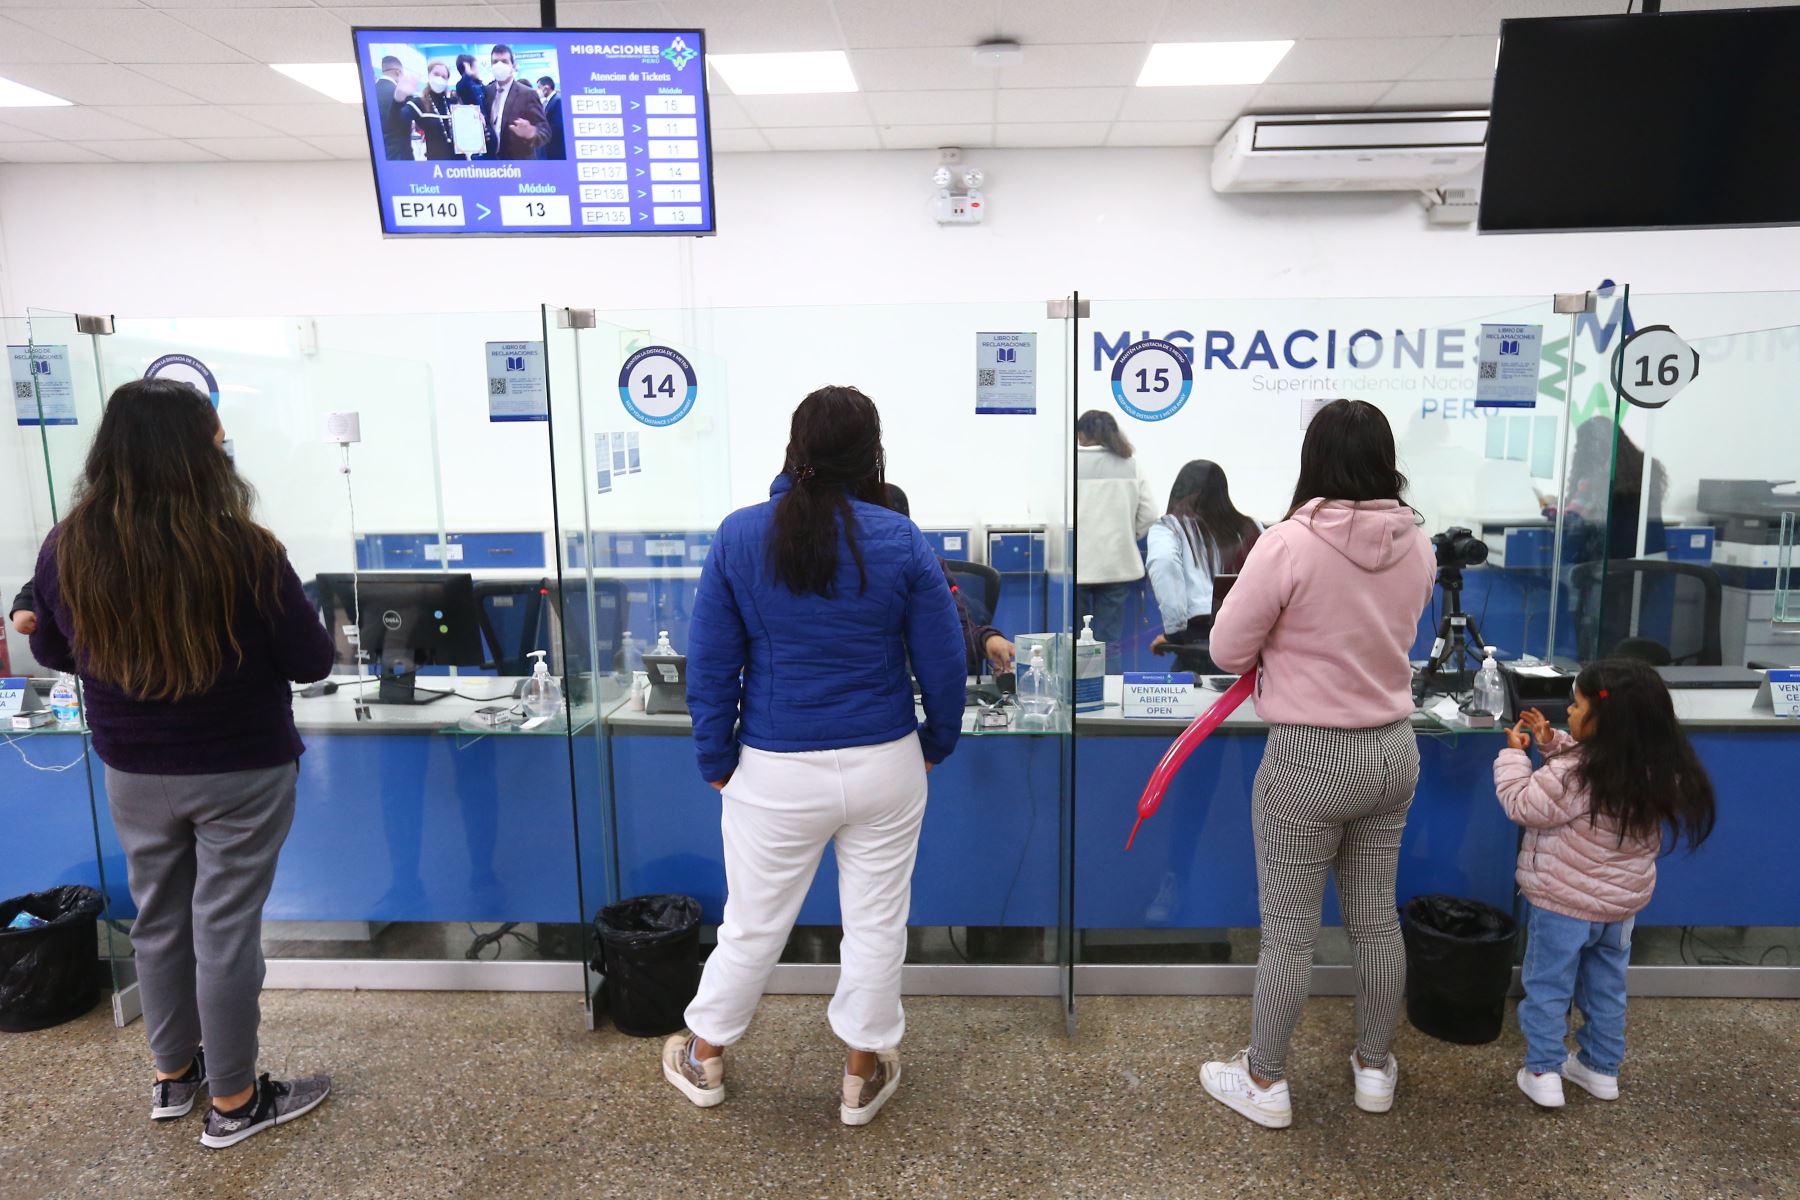 Migraciones detiene momentáneamente emisión de pasaportes en aeropuerto Jorge Chávez